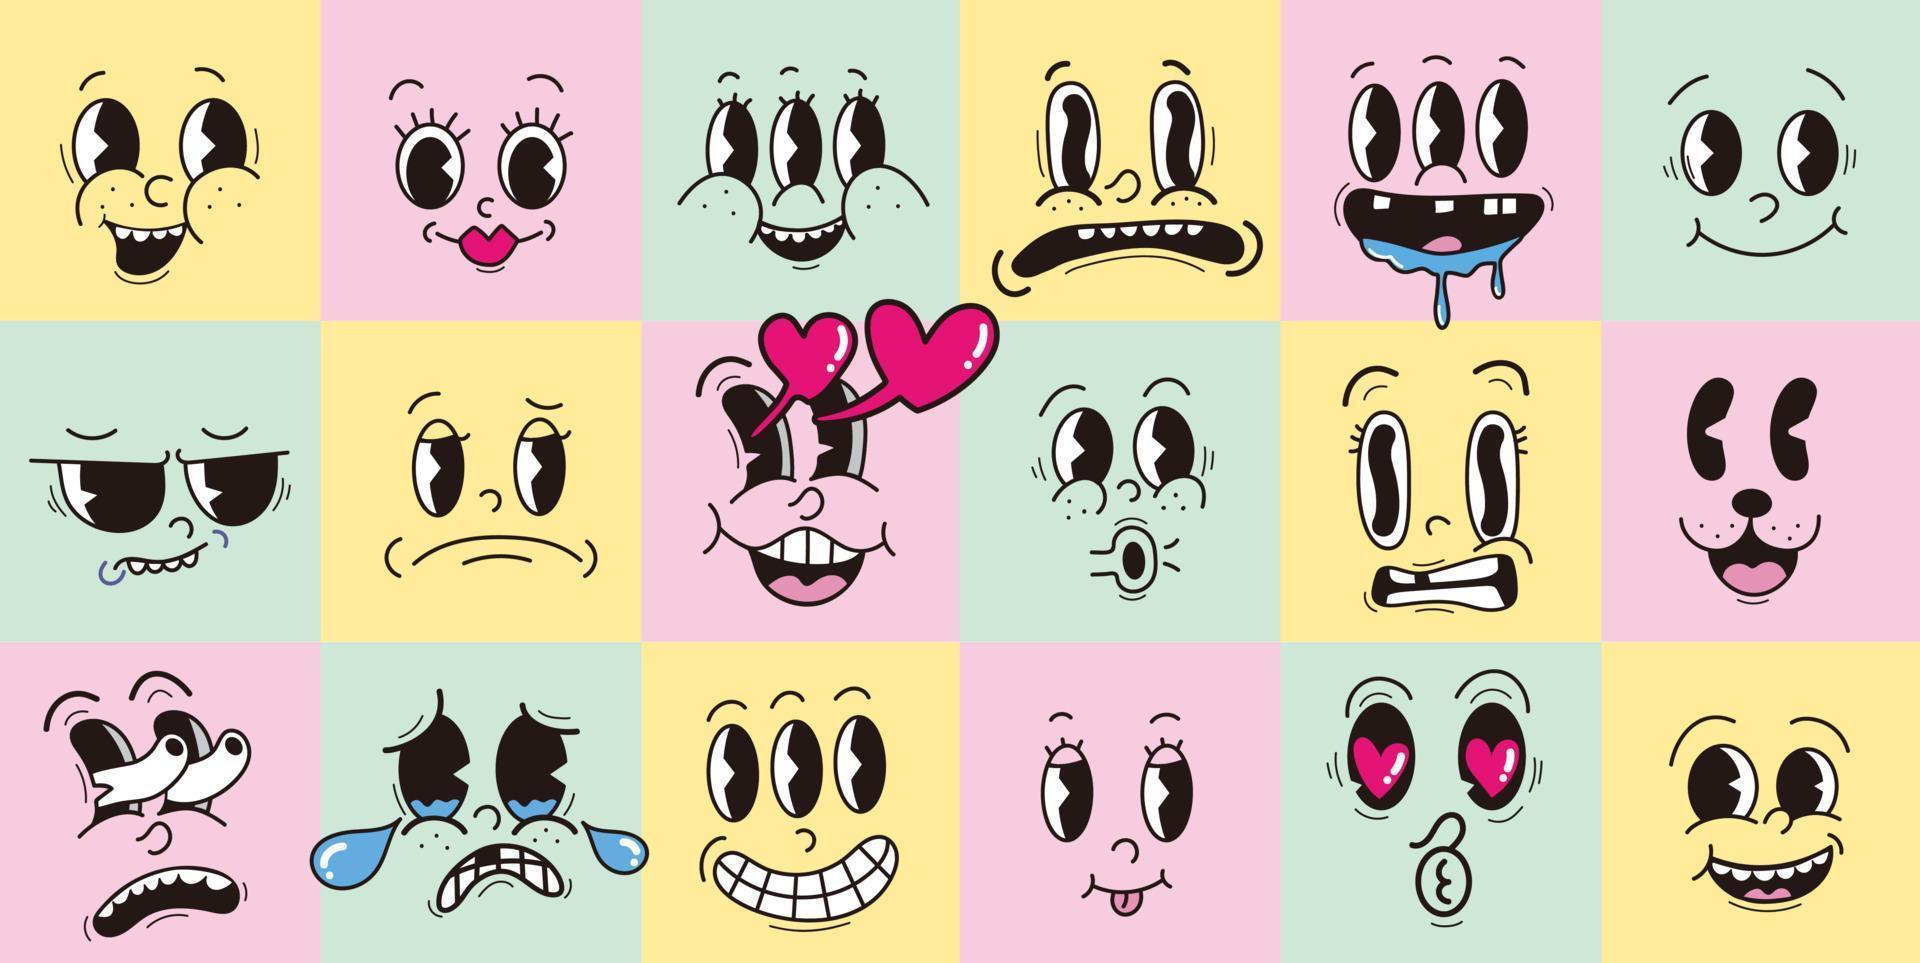 Jahrgang 30er 40er 50er Cartoon ausdrucksstarke Augen und Mund, lächelnd, weinend und überrascht Charakter Gesichtsausdrücke Emoji Set Premium-Vektor vektor